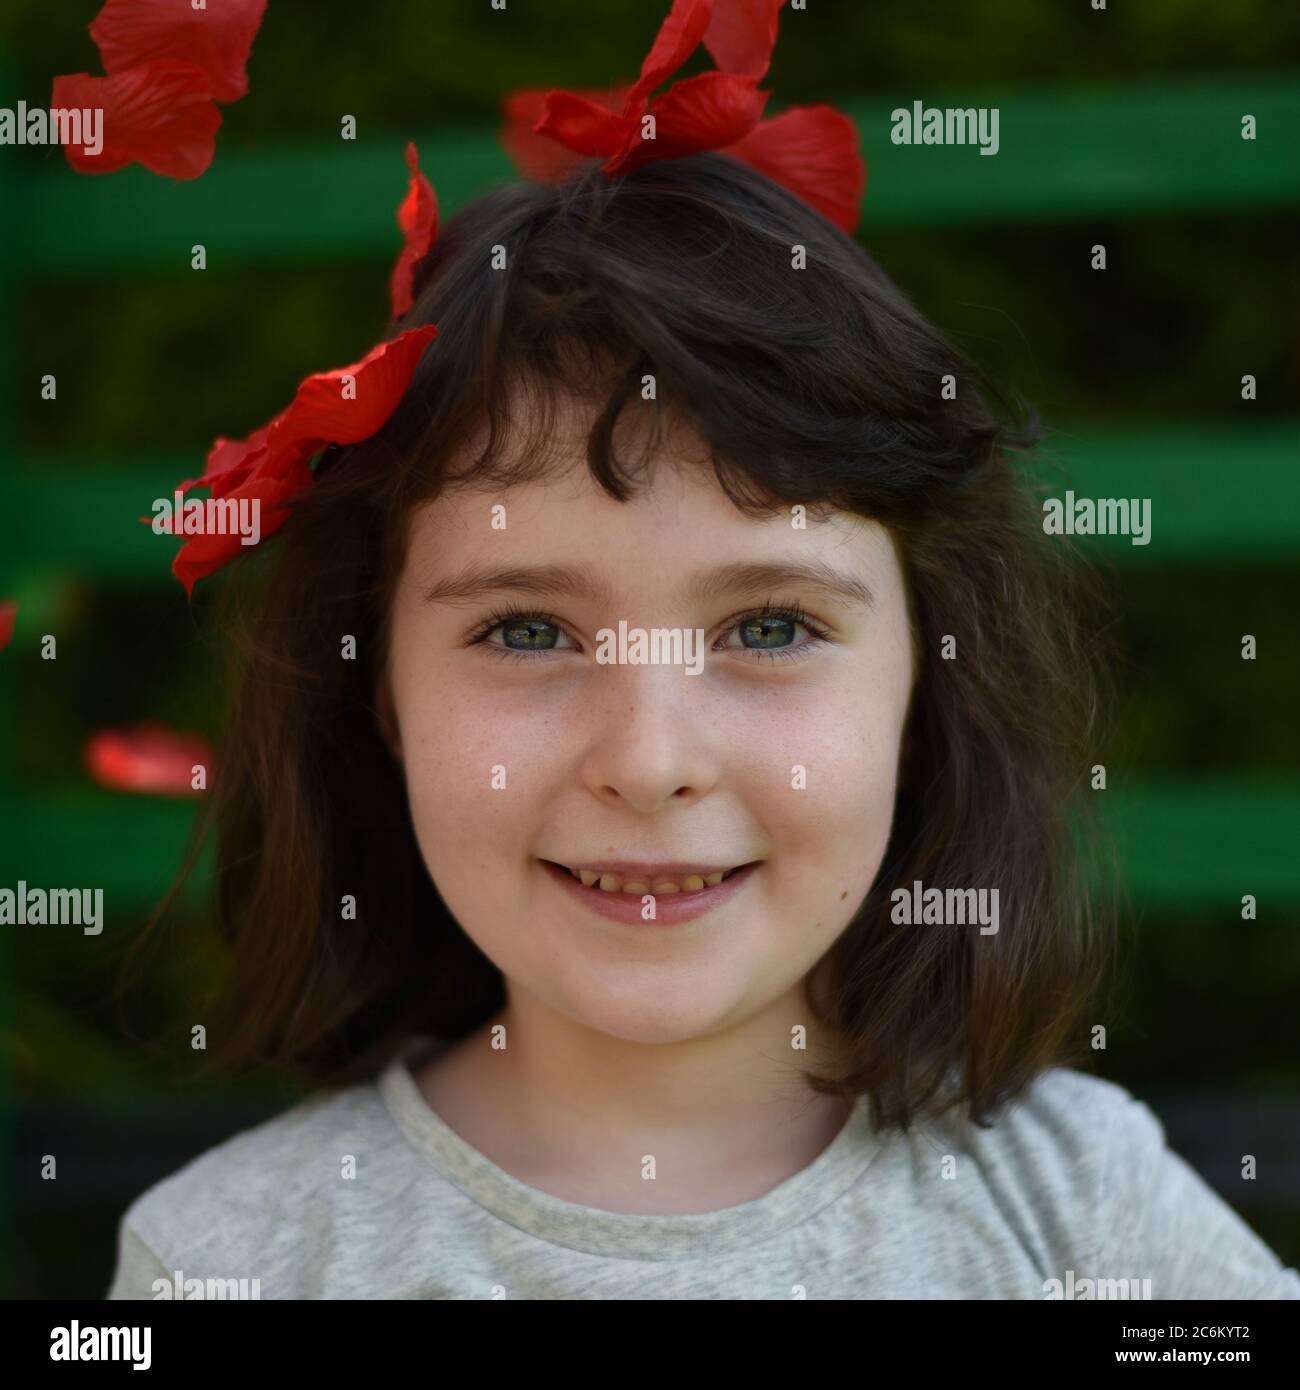 Ritratto di bambina tra petali rossi su sfondo verde scuro, immagine quadrata Foto Stock